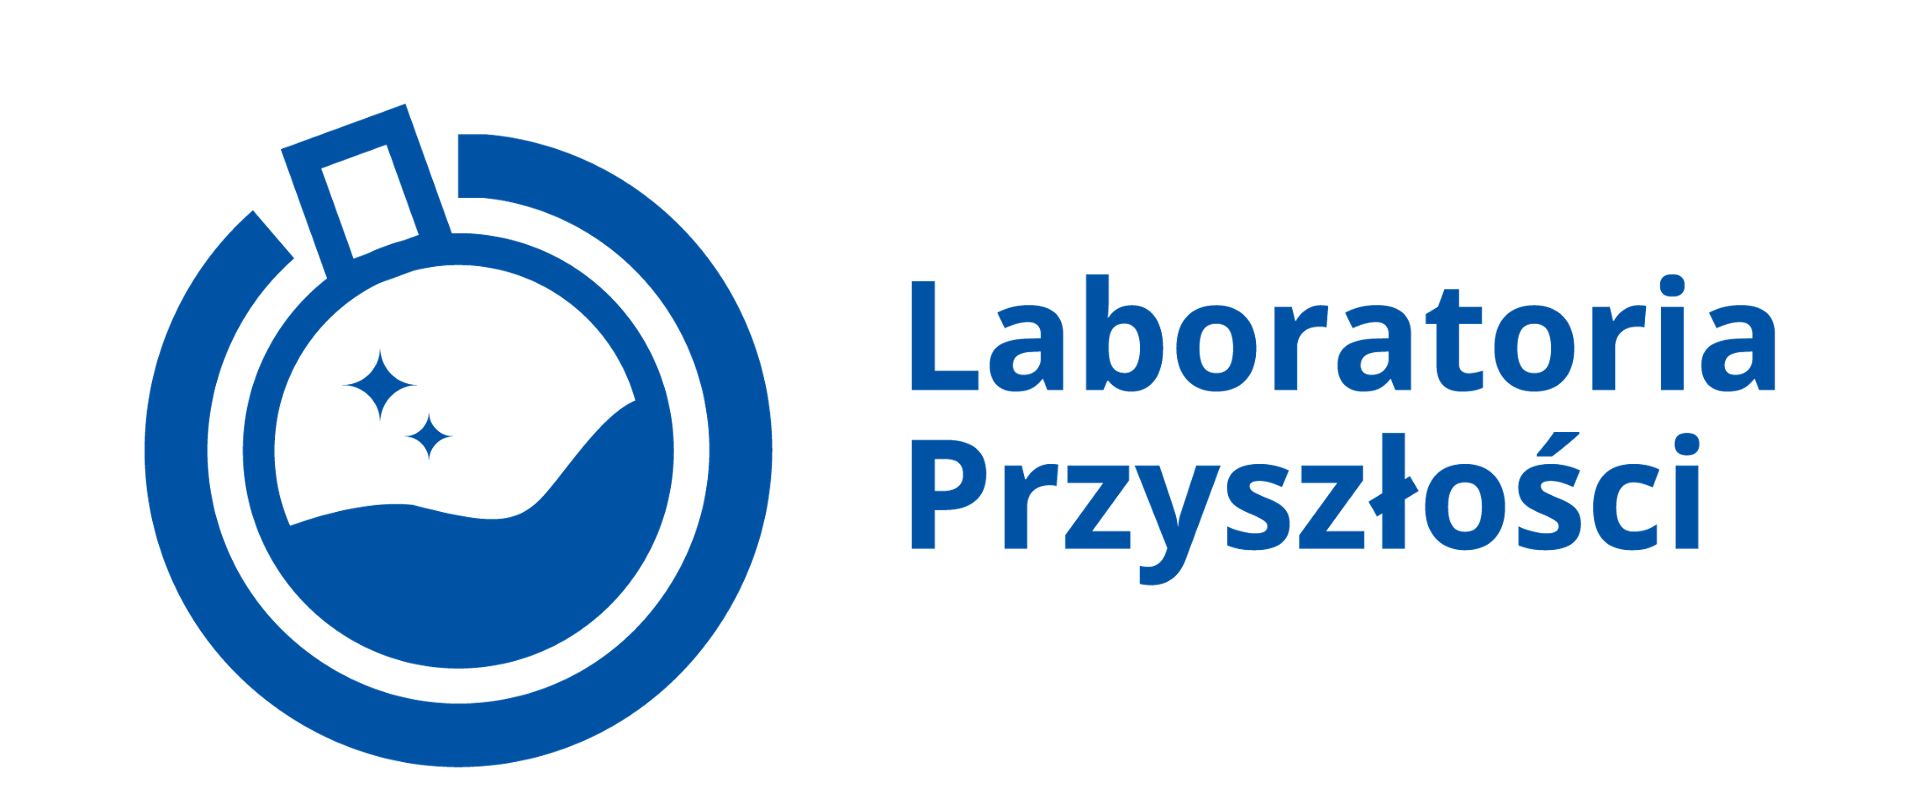 logo laboratoria przyszlosci